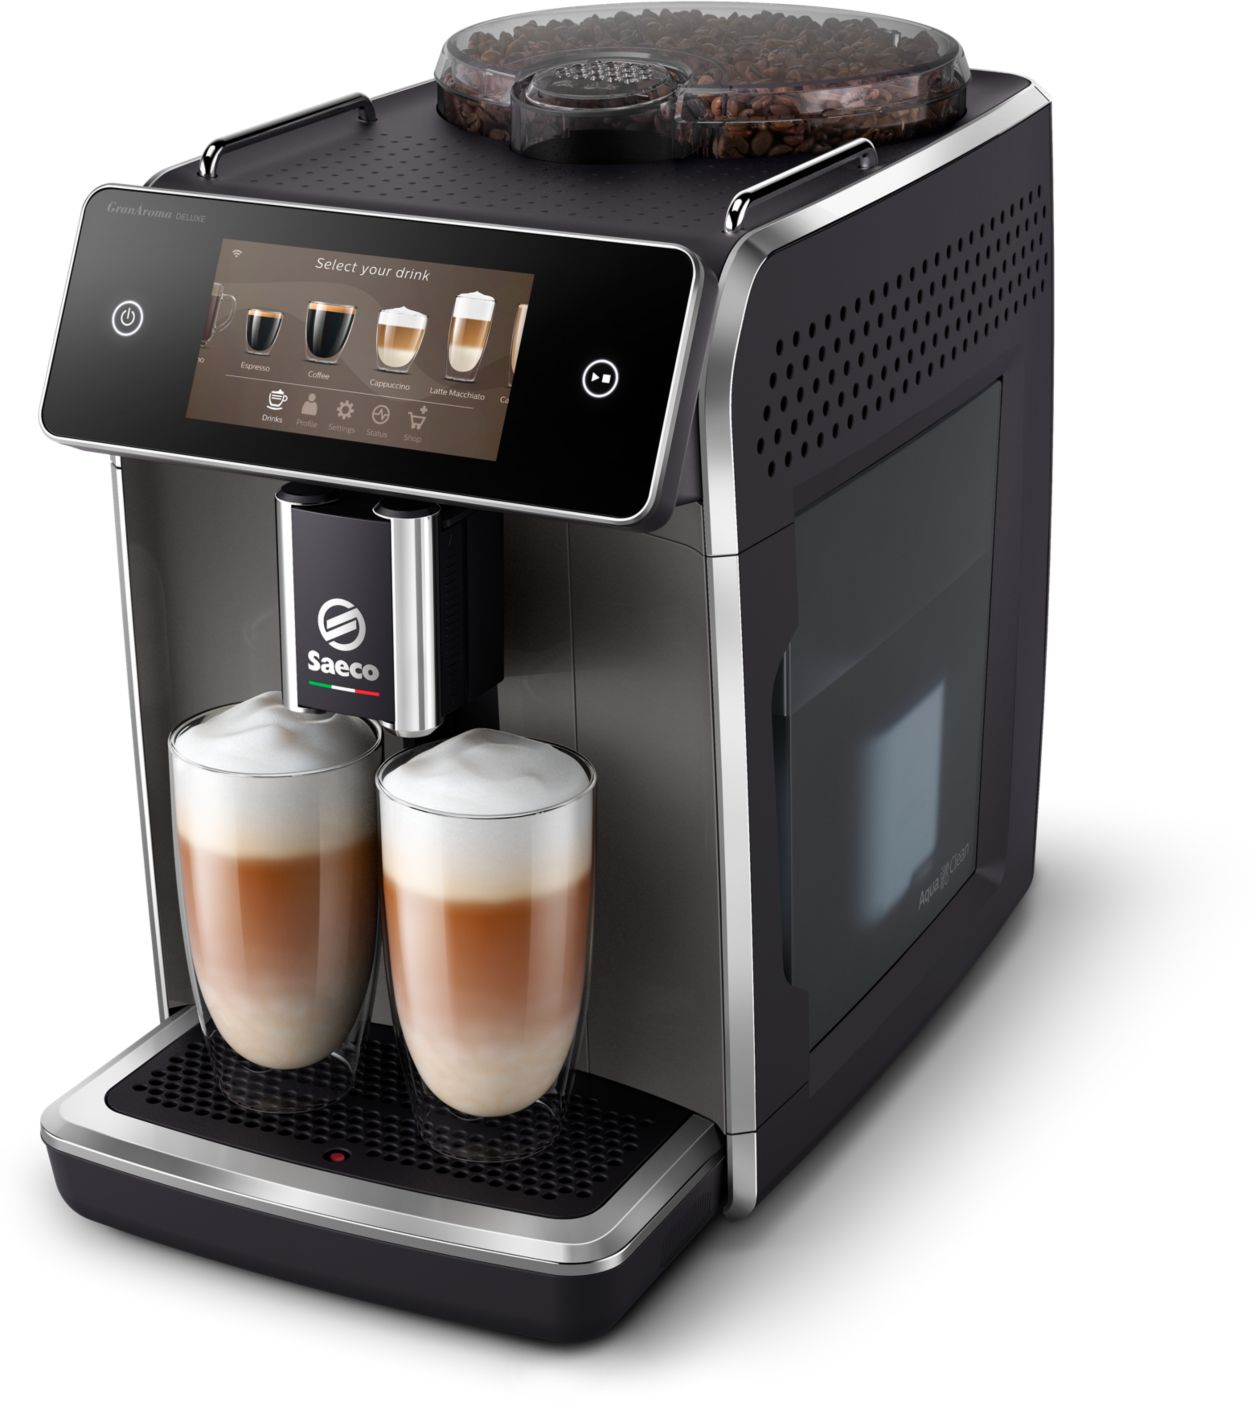 Evenement warm God GranAroma Deluxe Fully Automatic Espresso Machine SM6682/10 | Saeco